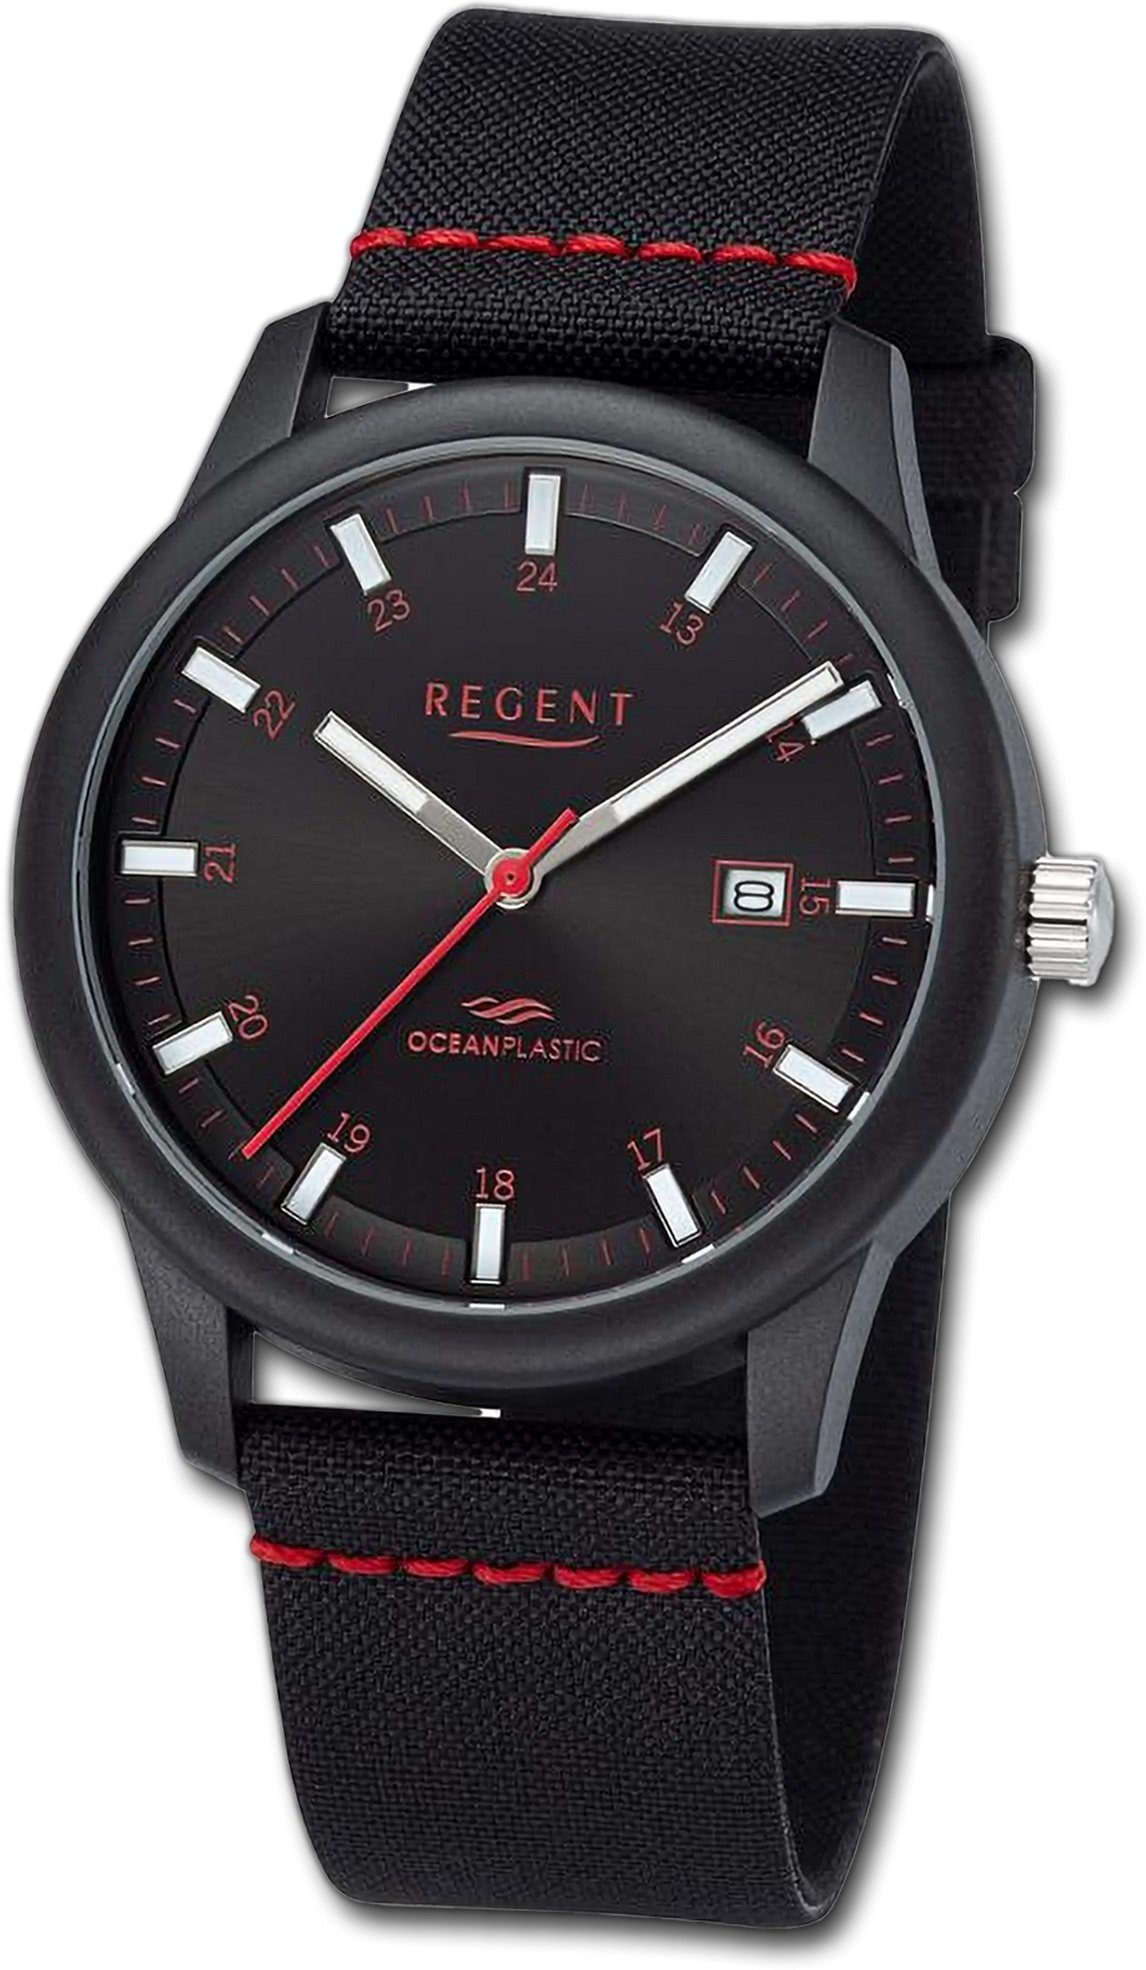 Quarzuhr schwarz, 40mm) Herren Gehäuse, Analog, rot, Regent groß rundes Armbanduhr Herrenuhr Nylonarmband (ca. Regent